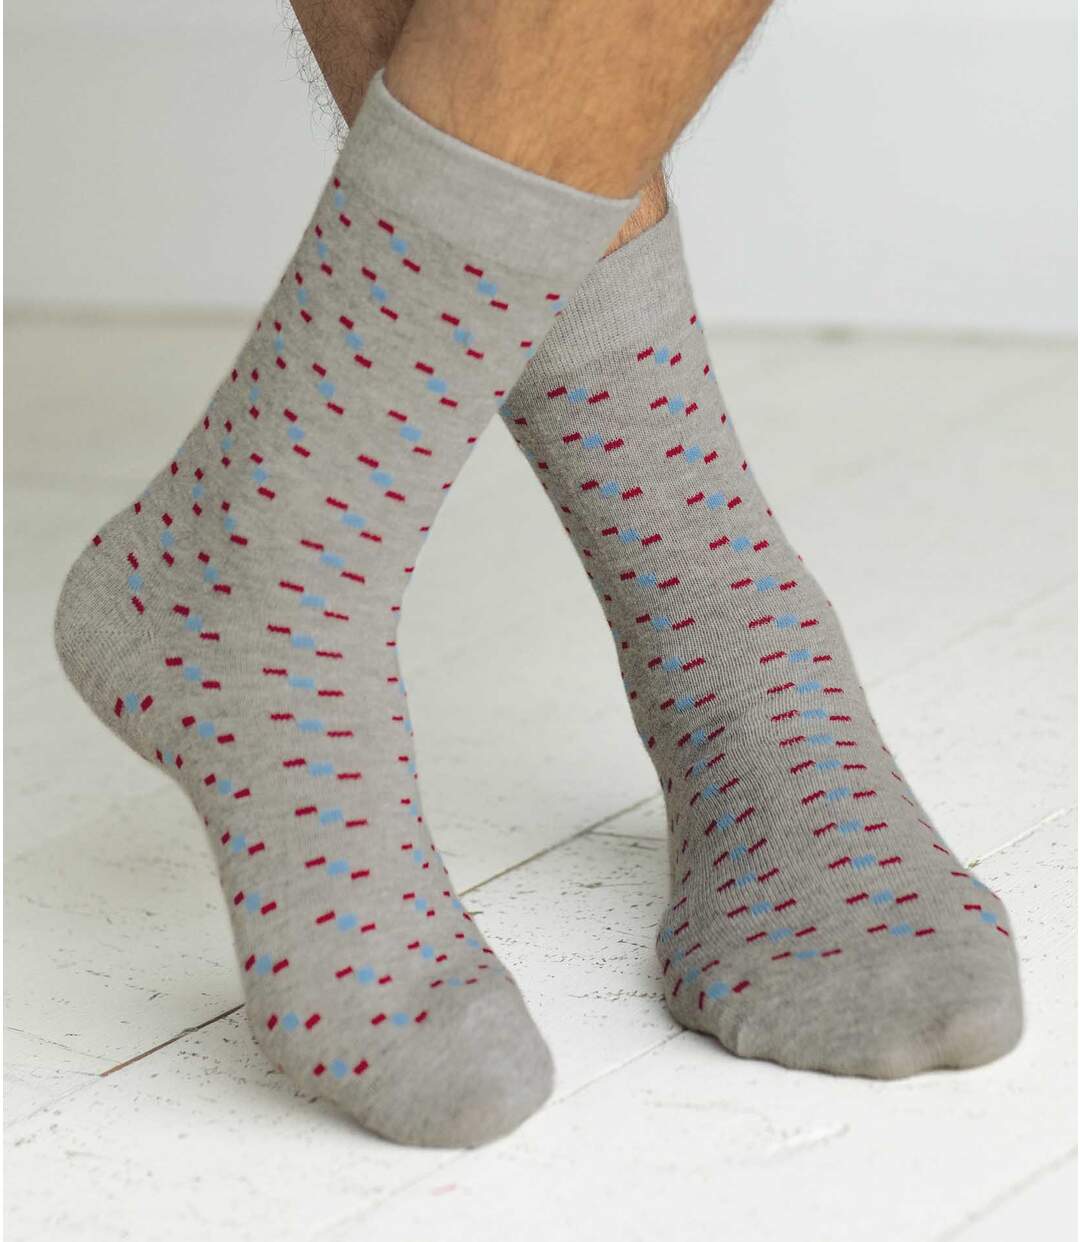 Pack of 4 Pairs of Men's Patterned Socks - Anthracite Light Grey Atlas For Men